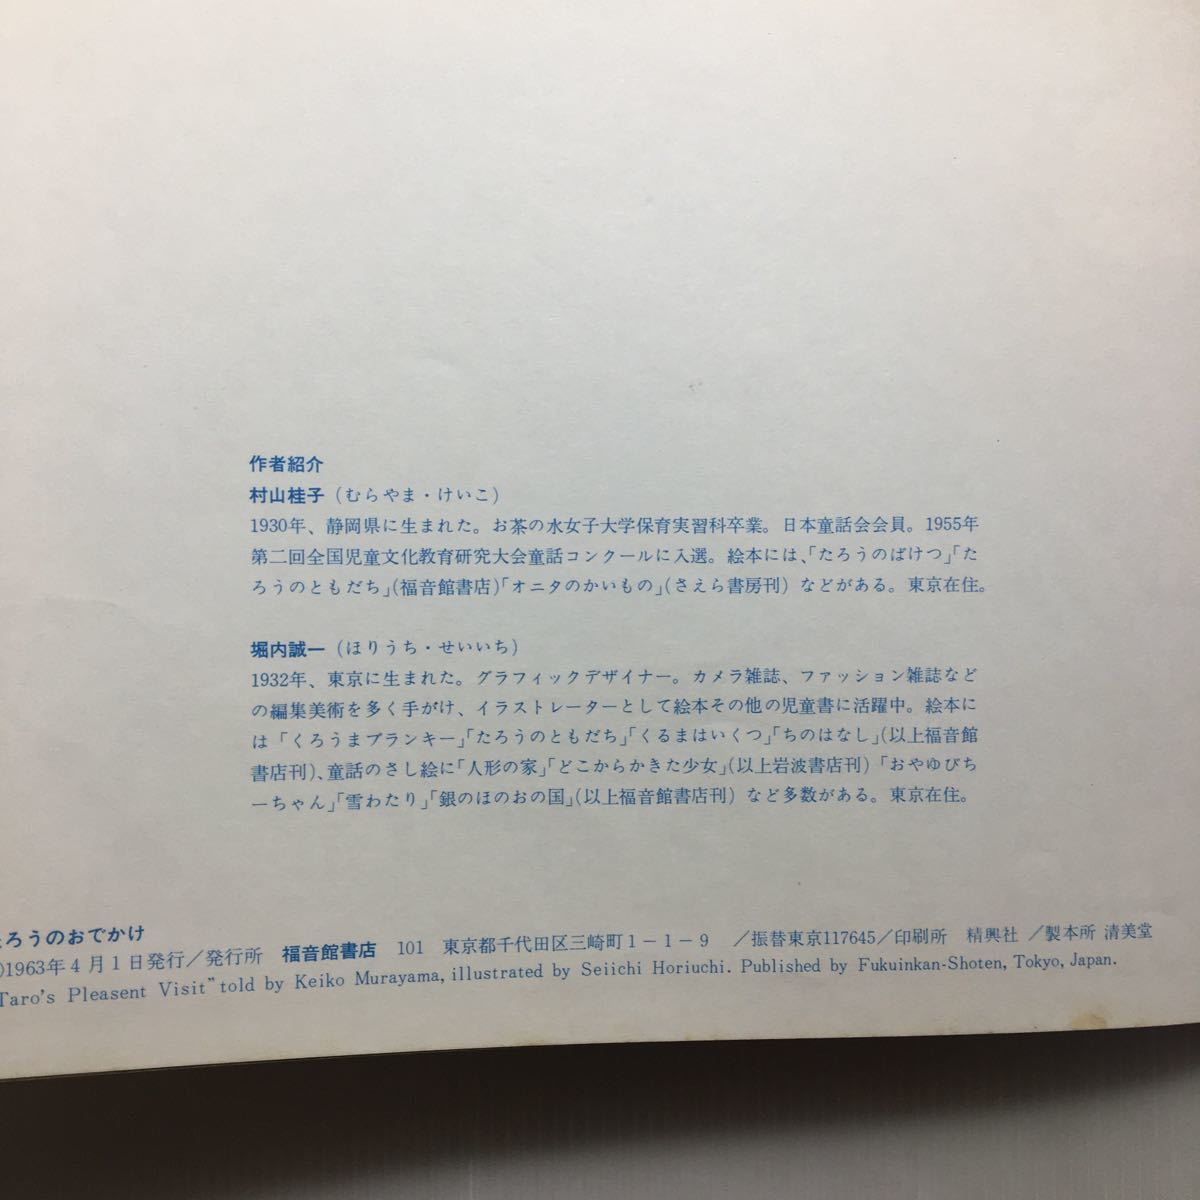 zaa-145♪たろうのおでかけ (日本語) 大型本 1966/7/1 村山 桂子 (著), 堀内 誠一 (イラスト)